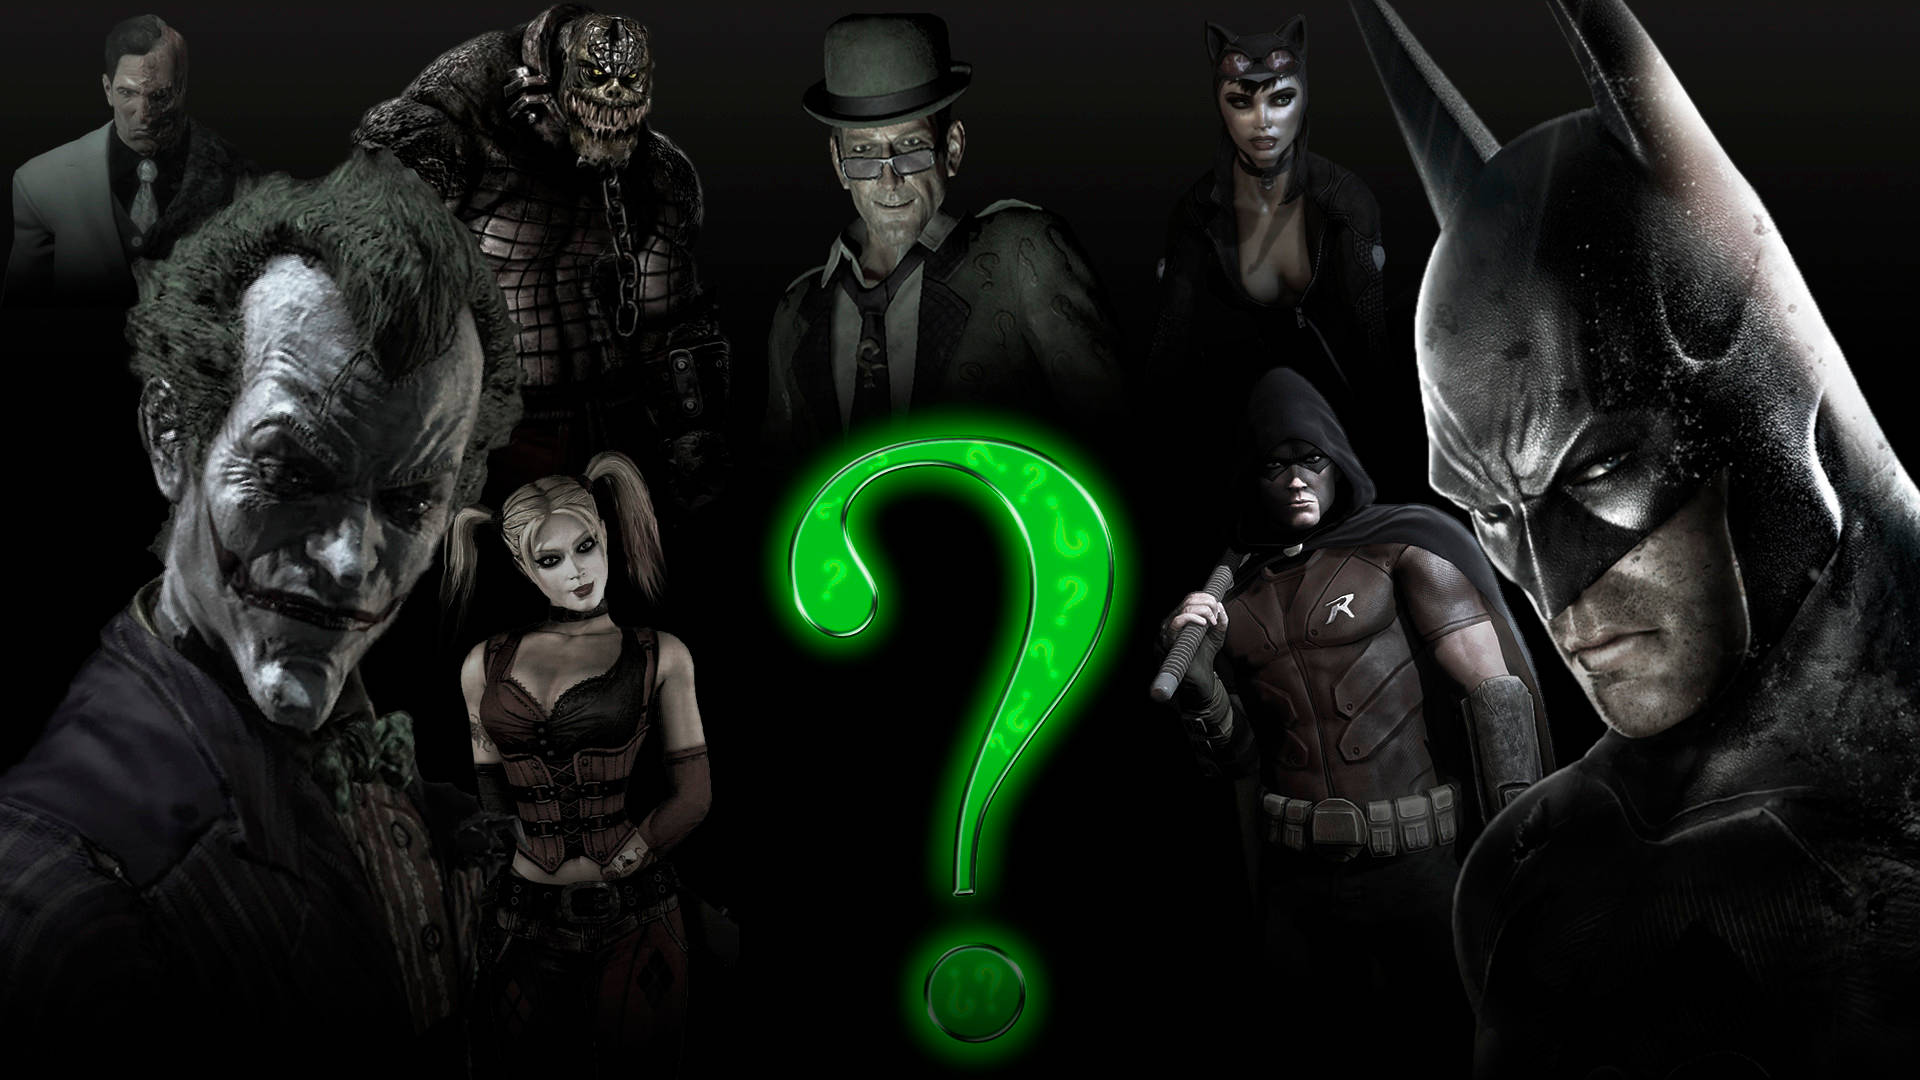 Personajesde Batman Con El Fondo De Pantalla De Harley Quinn En El Teléfono. Fondo de pantalla